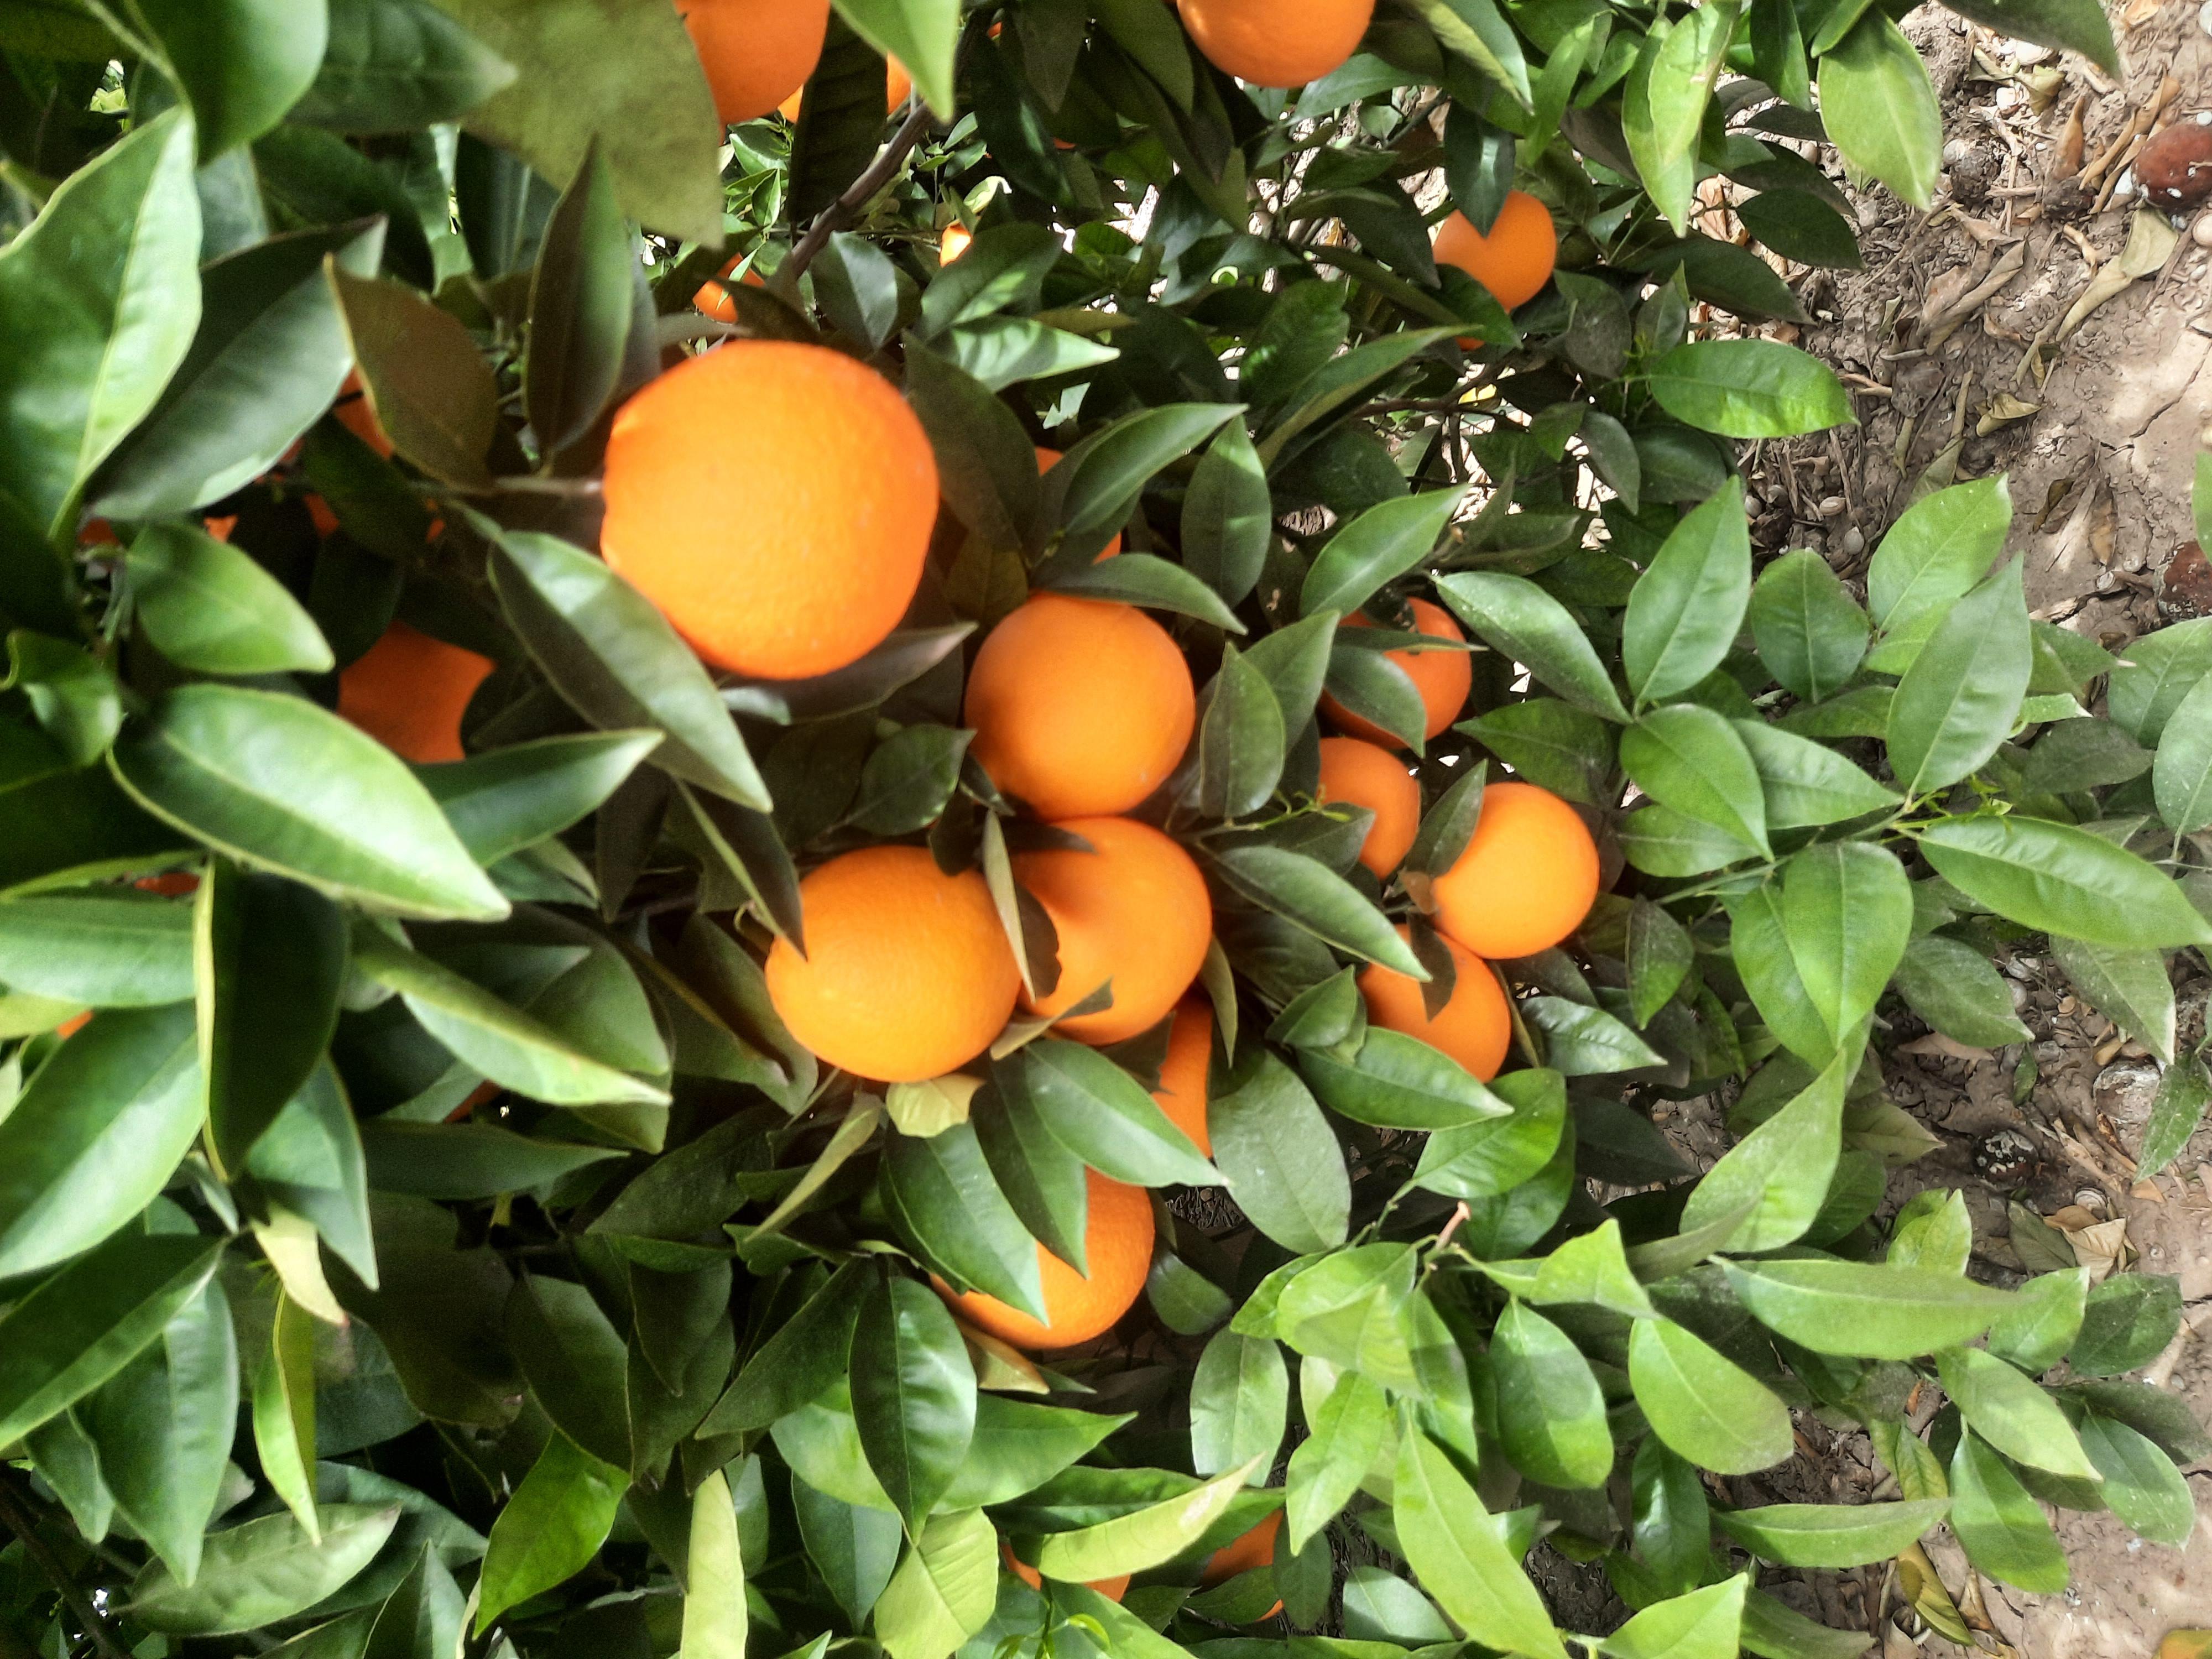 Portakal - İmdat Kılınç tarafından verilen valencia çeşidi portakal alım ilanlarını tarimziraat.com adresinde bulabilirsiniz.